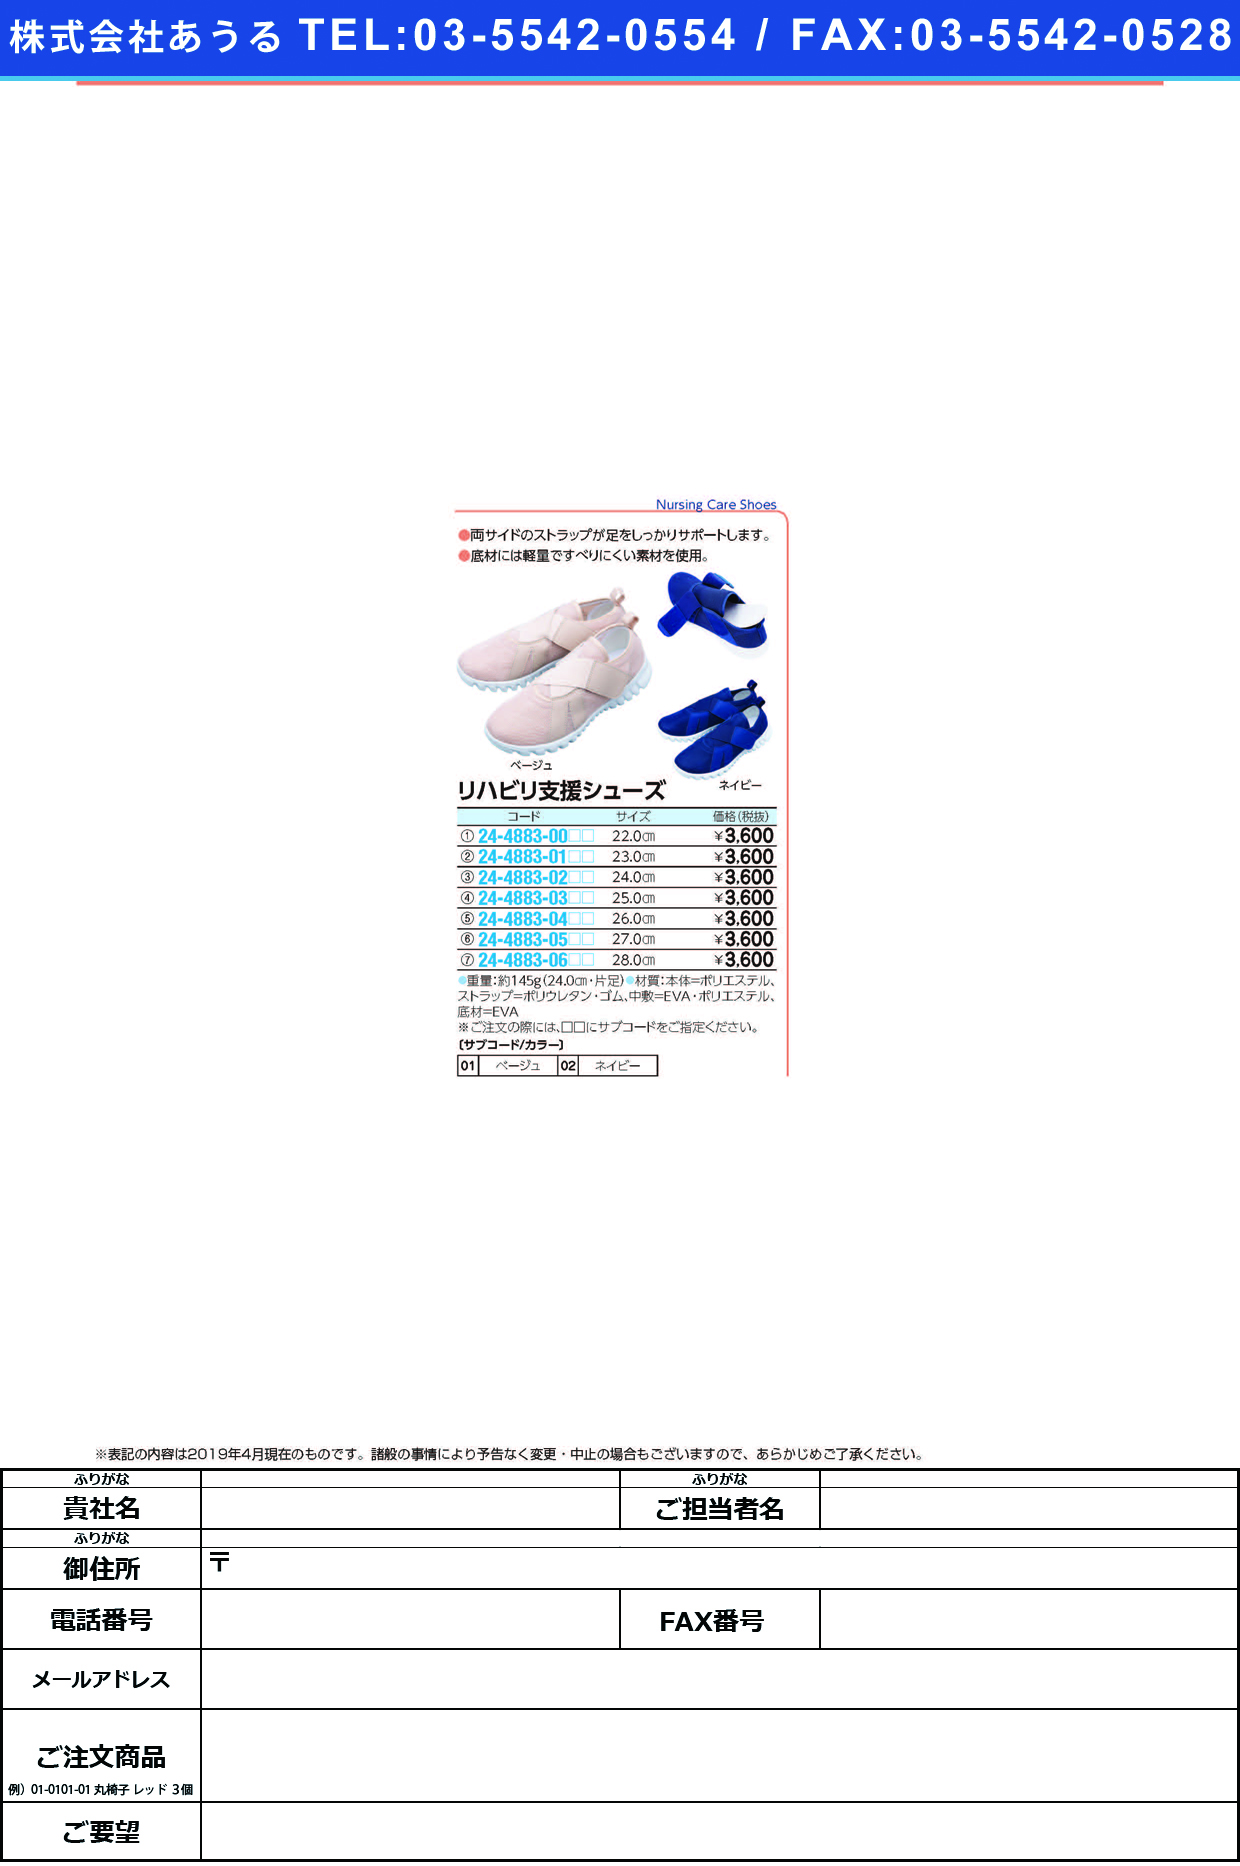 (24-4883-01)リハビリ支援シューズ 23.0CM ﾘﾊﾋﾞﾘｼｴﾝｼｭｰｽﾞ ネイビー【1足単位】【2019年カタログ商品】